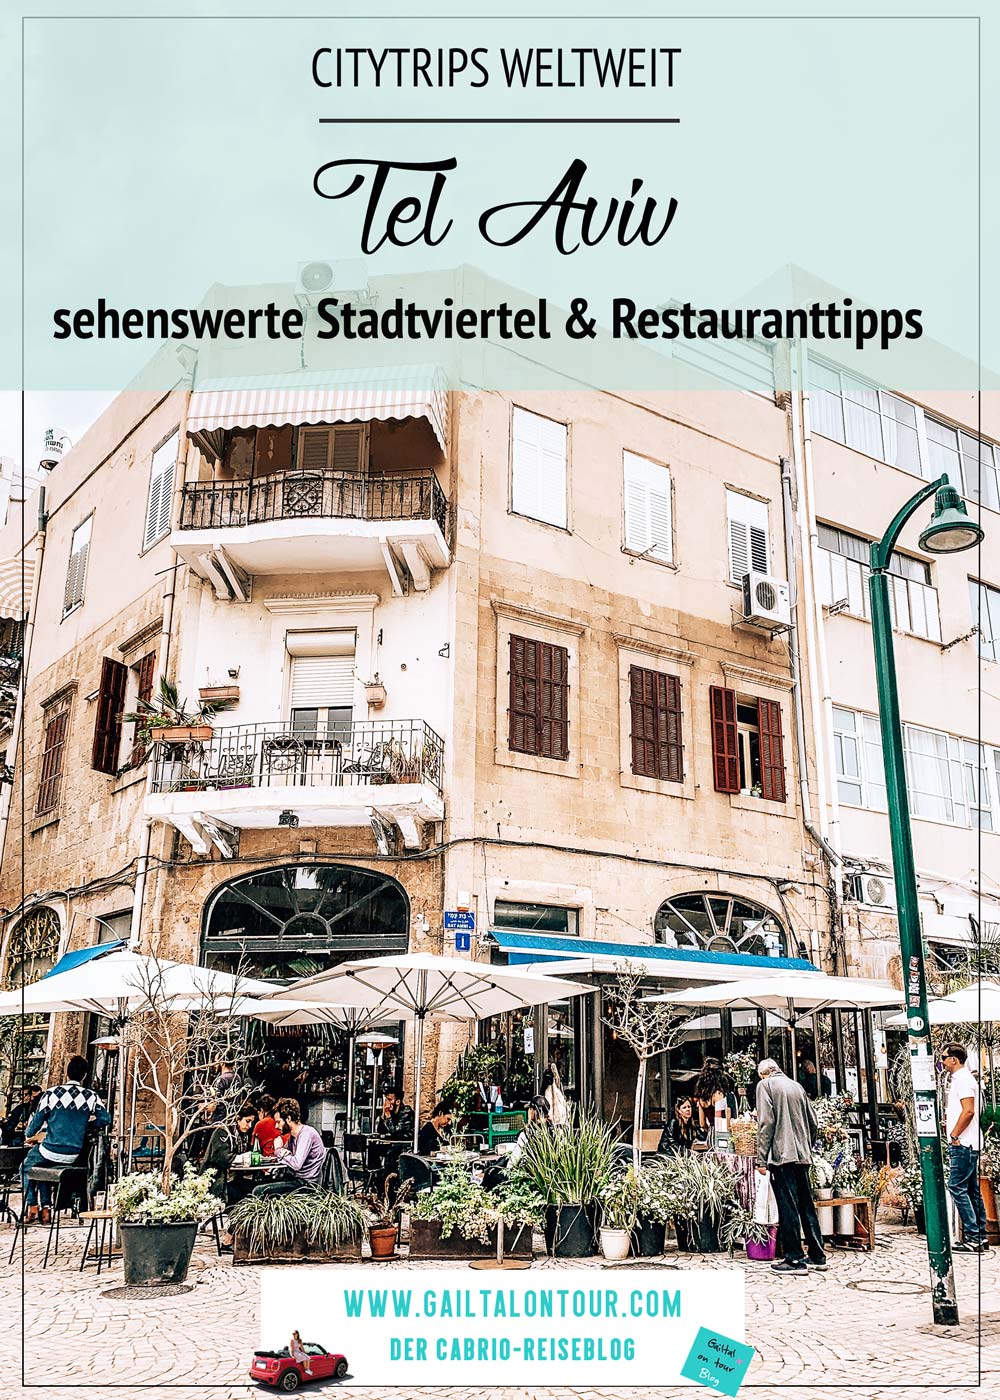 tel-aviv-sehenswerte-stadtviertel-restauranttips